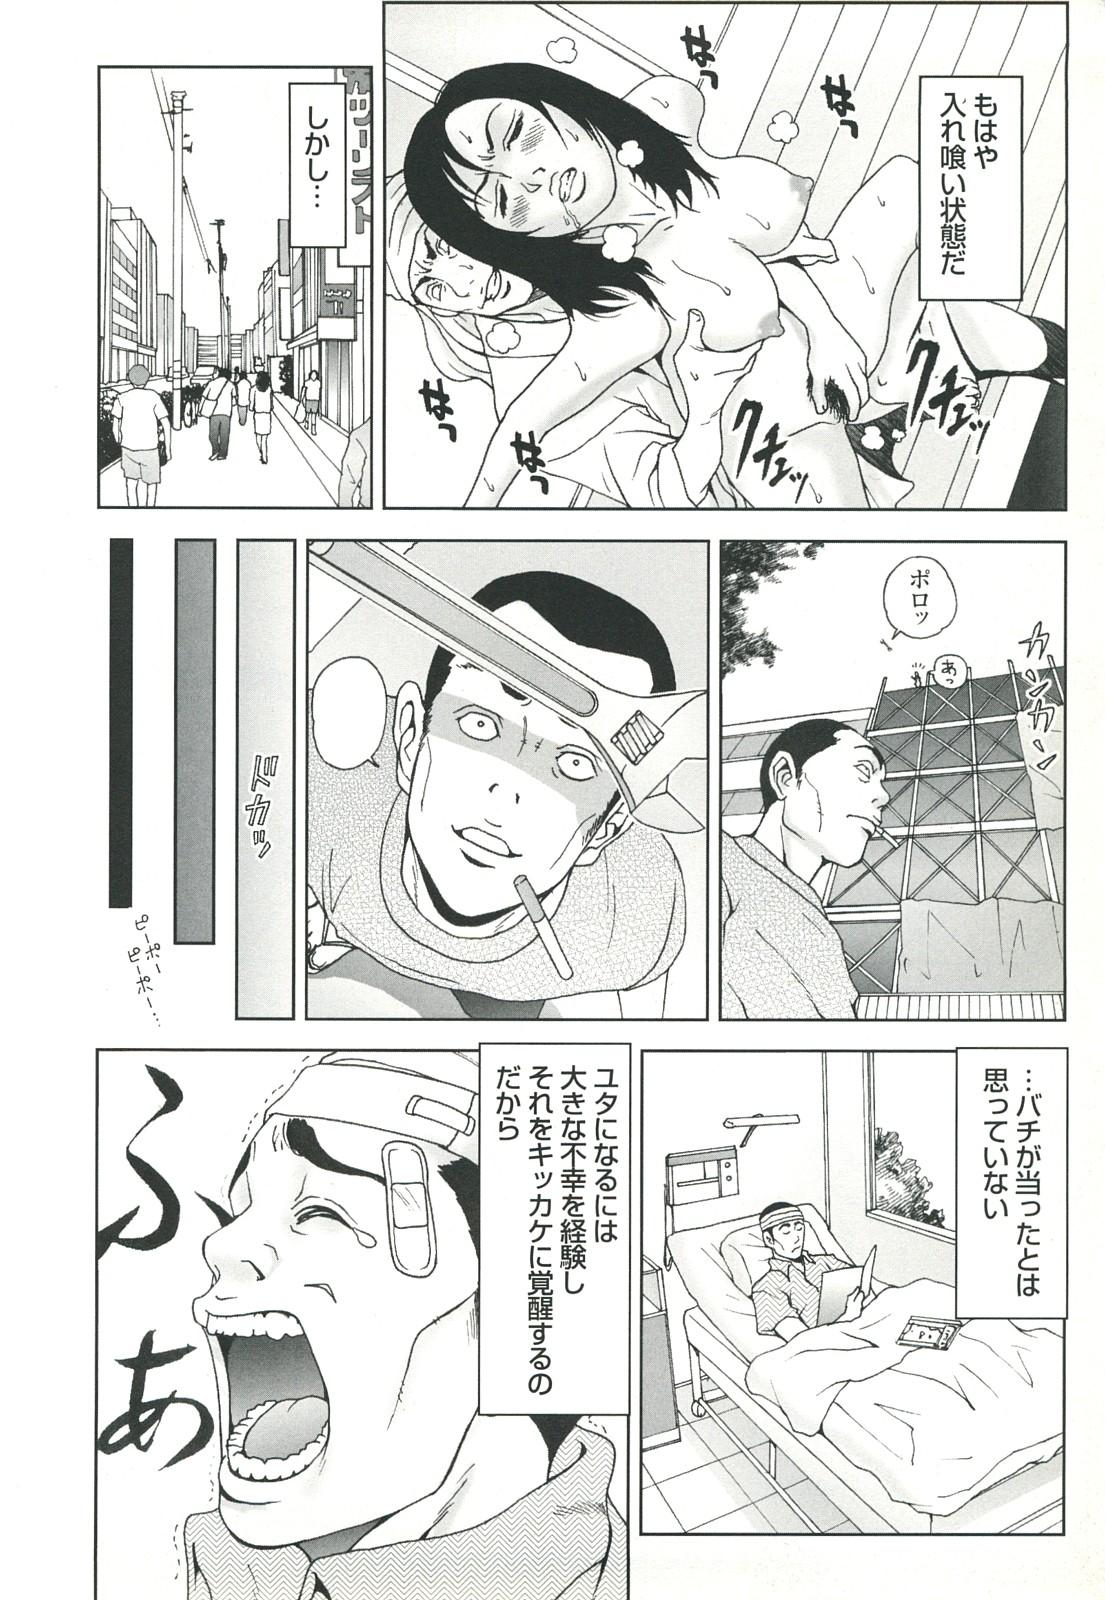 コミック裏モノJAPAN Vol.18 今井のりたつスペシャル号 55